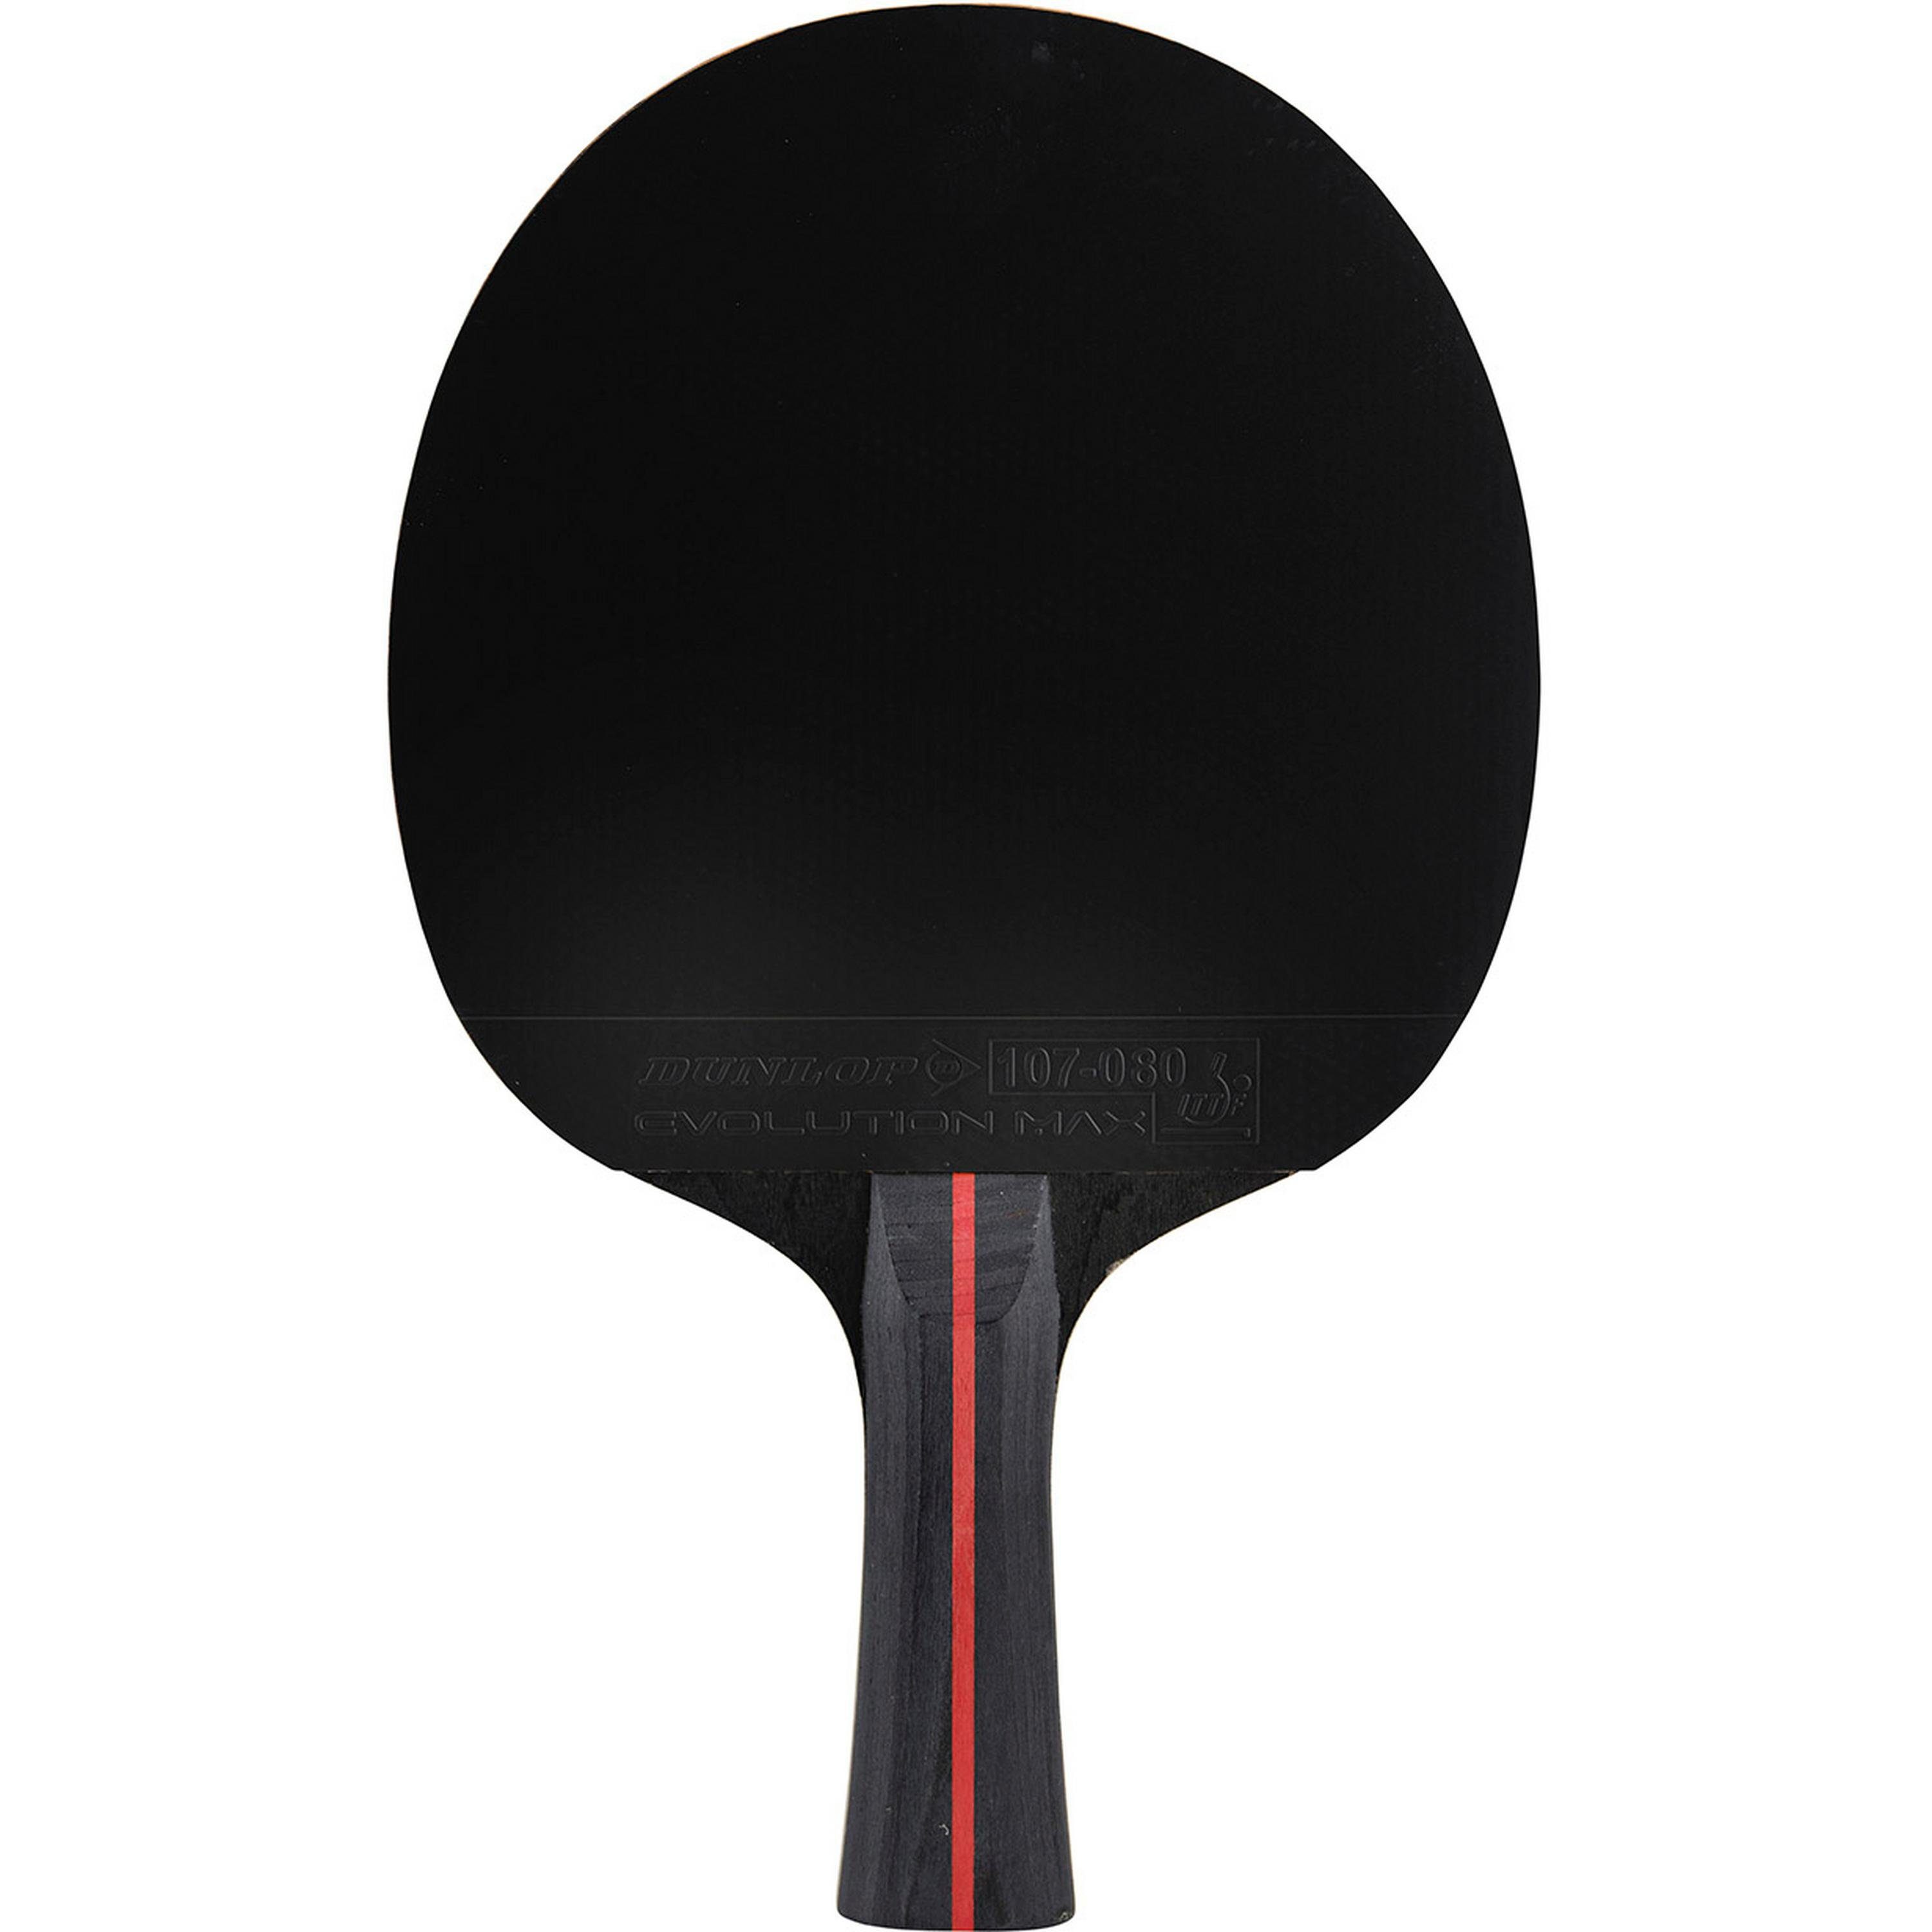 BLACKSTORM Dunlop Tischtennisschläger